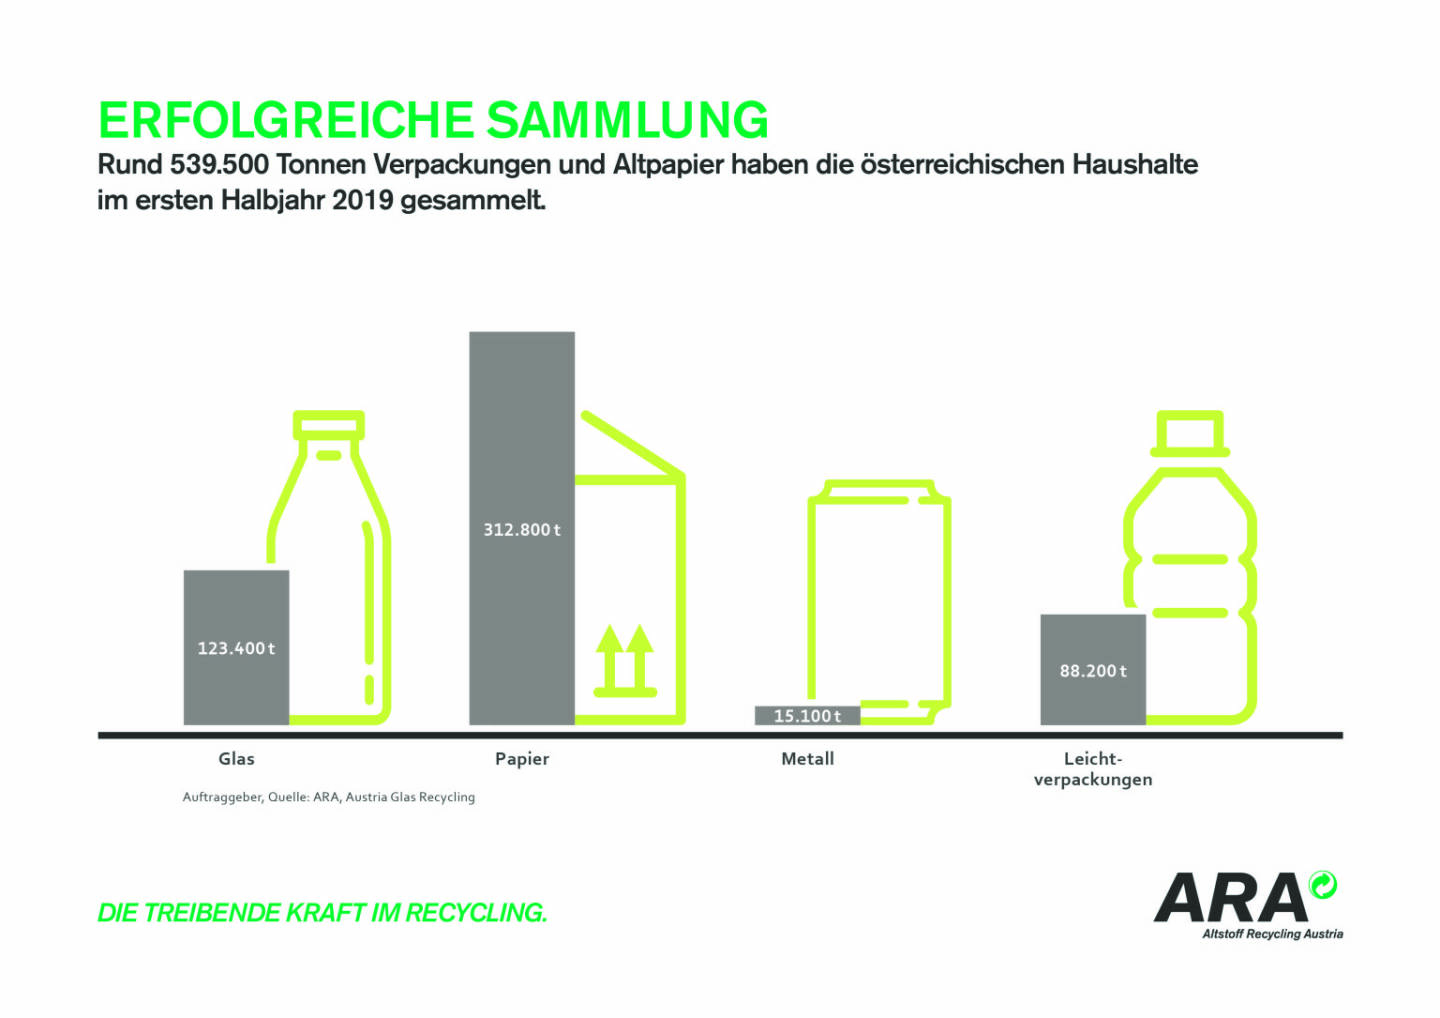 ARA - Erfolgreiche Sammlung - Rund 539.500 Tonnen Verpackungen und Altpapier haben die österreichischen Haushalte im ersten Halbjahr 2019 gesammelt. Credit: ARA